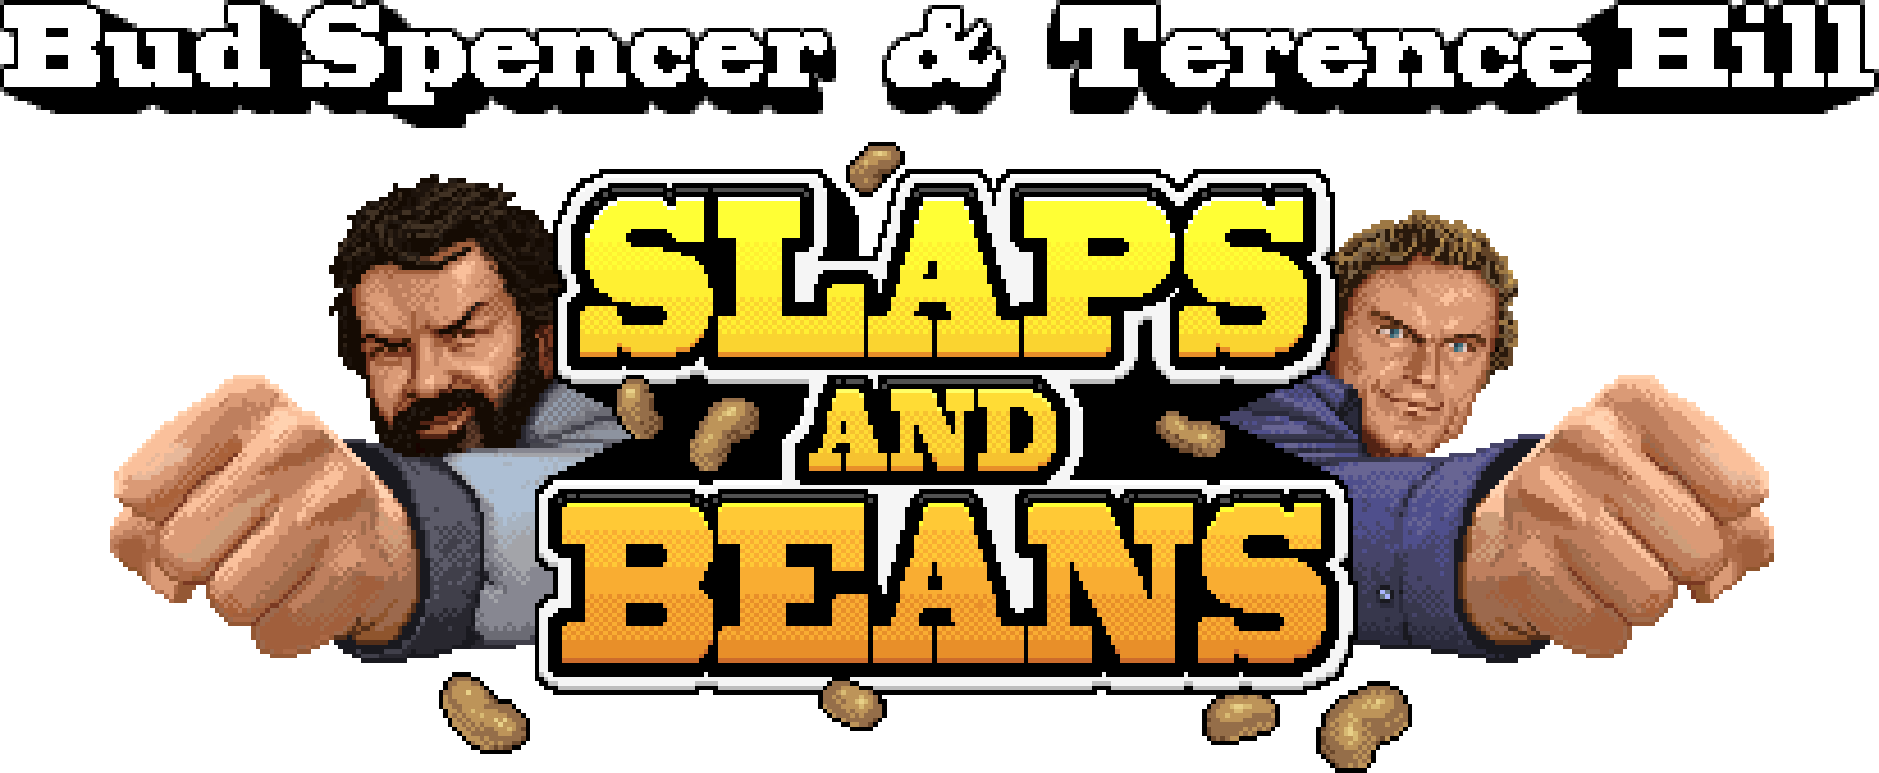 slaps_and_beans_logo